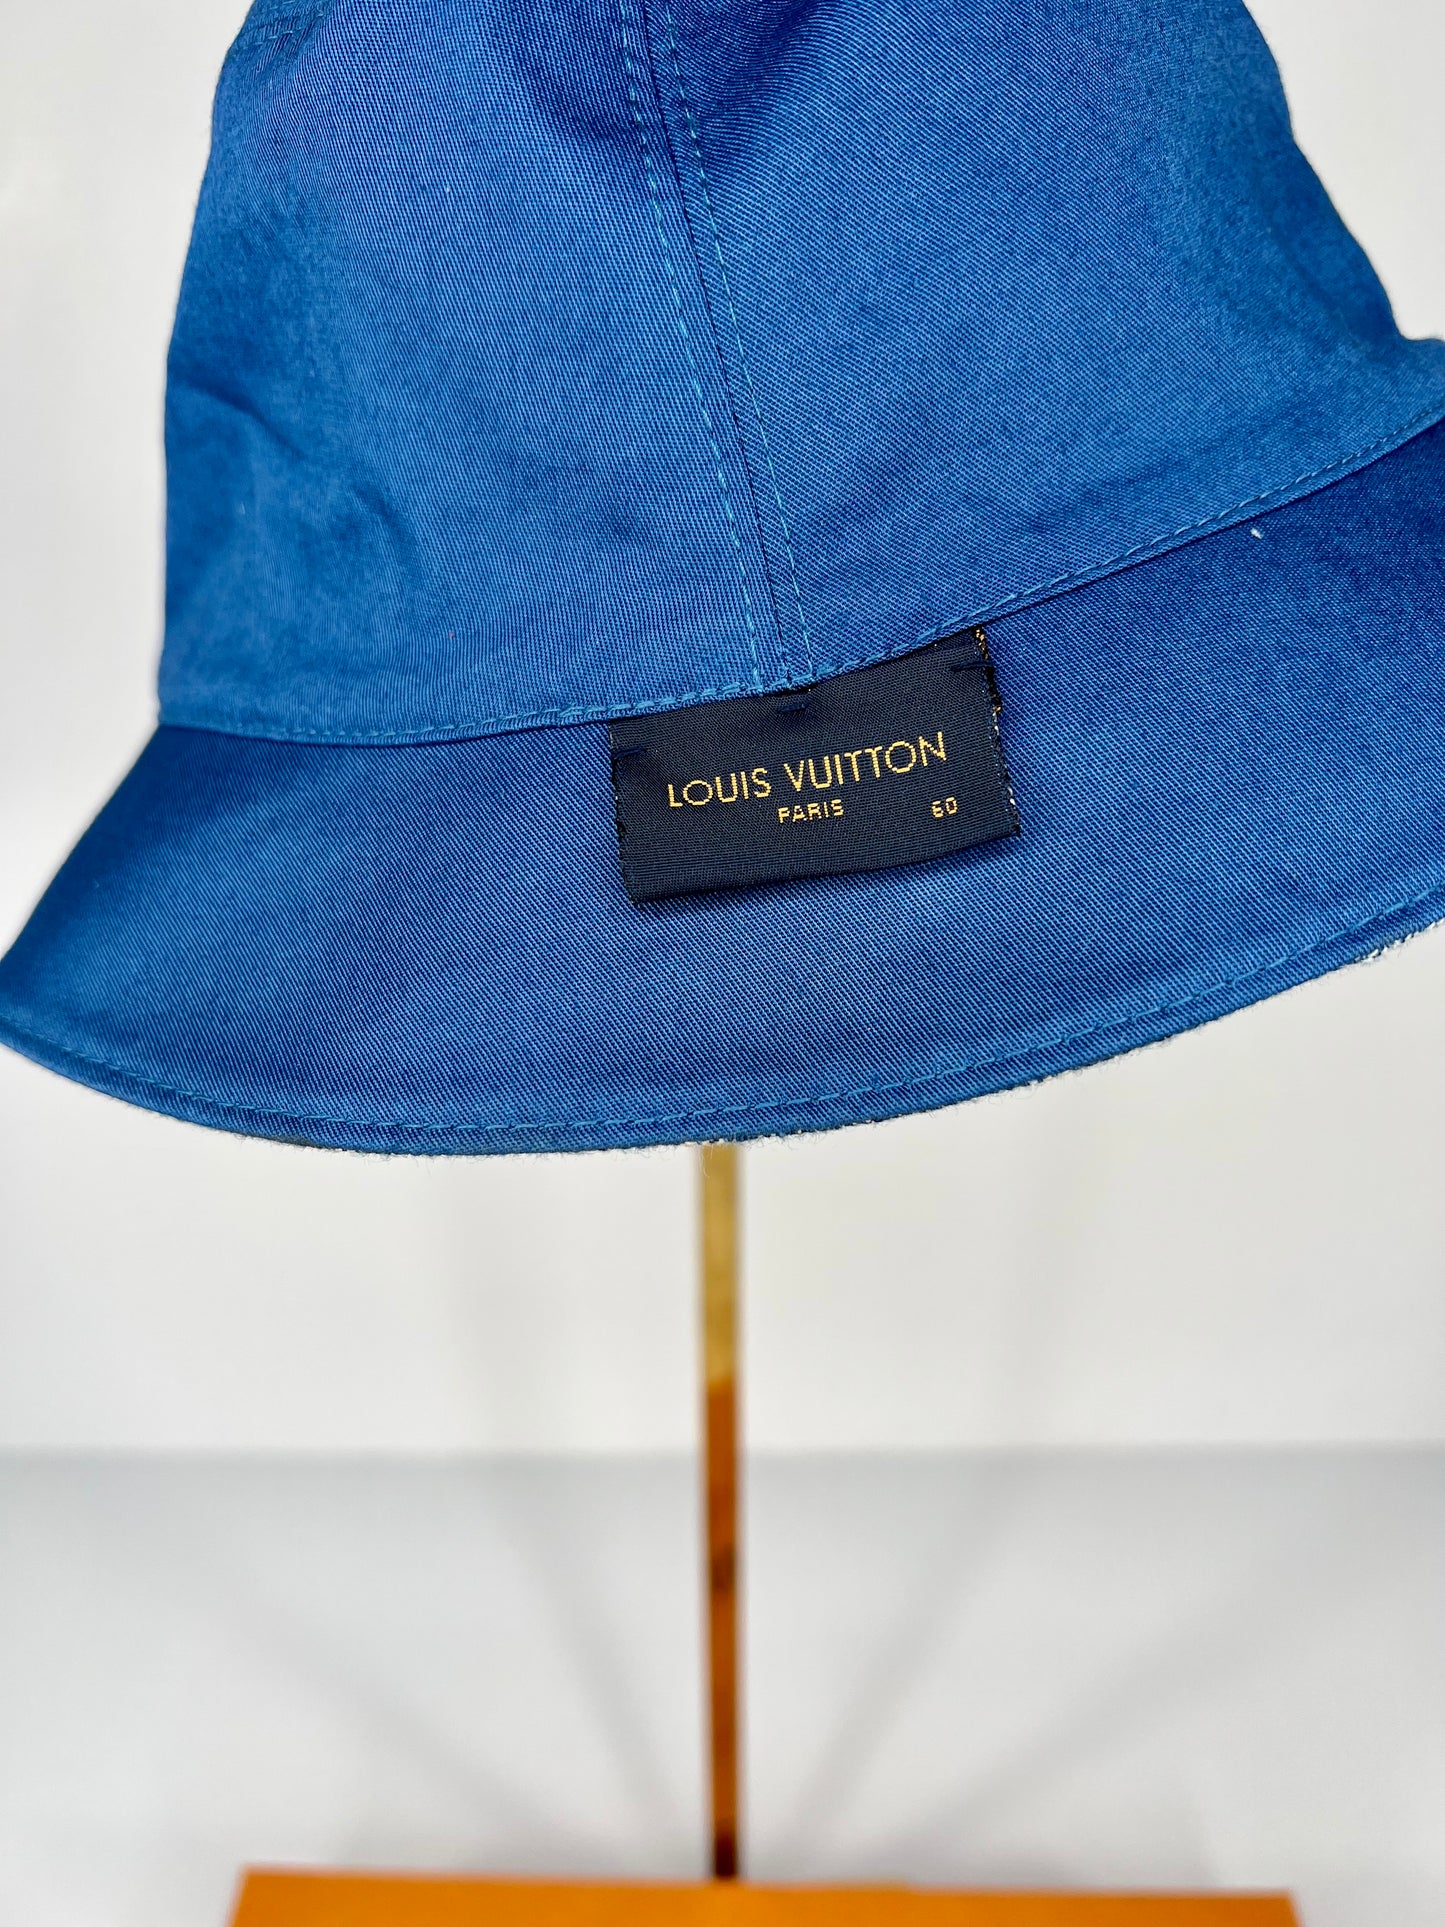 Louis Vuitton Monogram Essential Cap